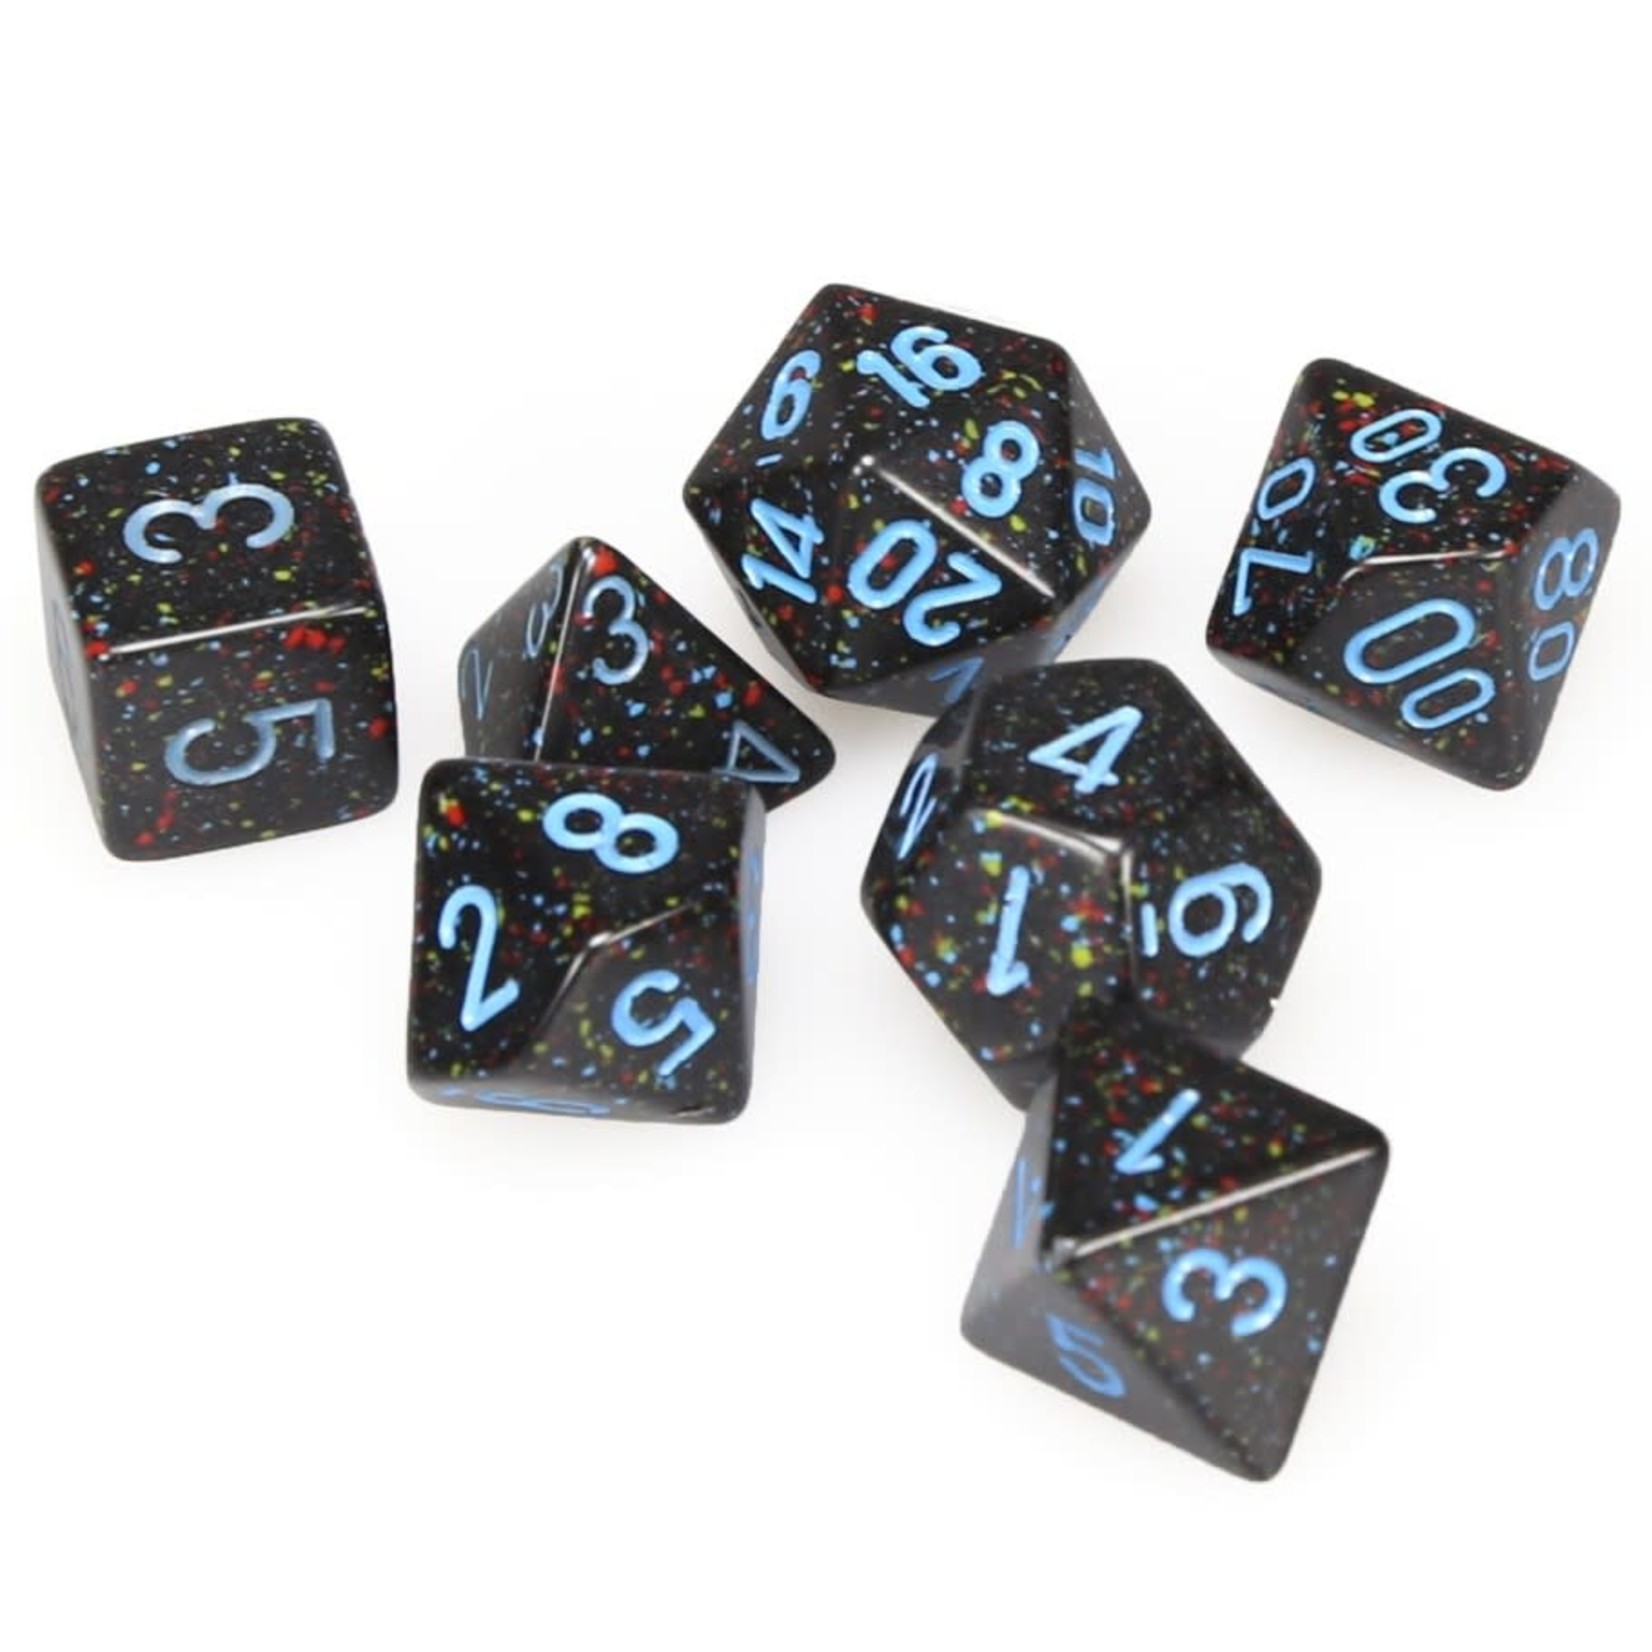 Chessex Chessex Speckled Blue Stars Polyhedral 7 die set